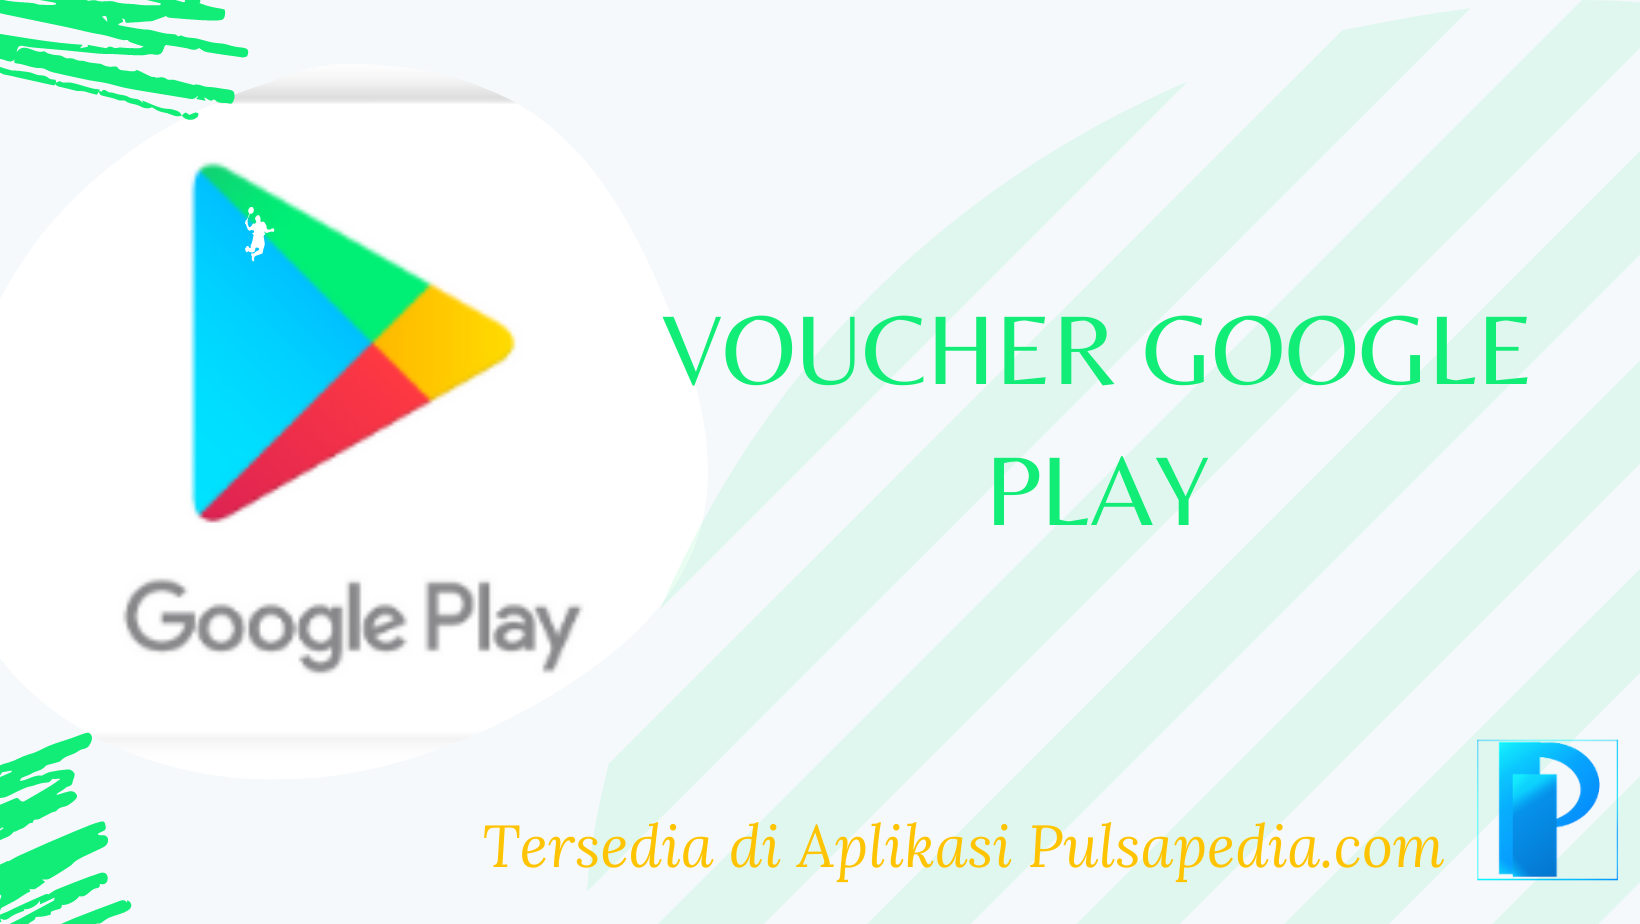 Google Play Voucher - wide 8